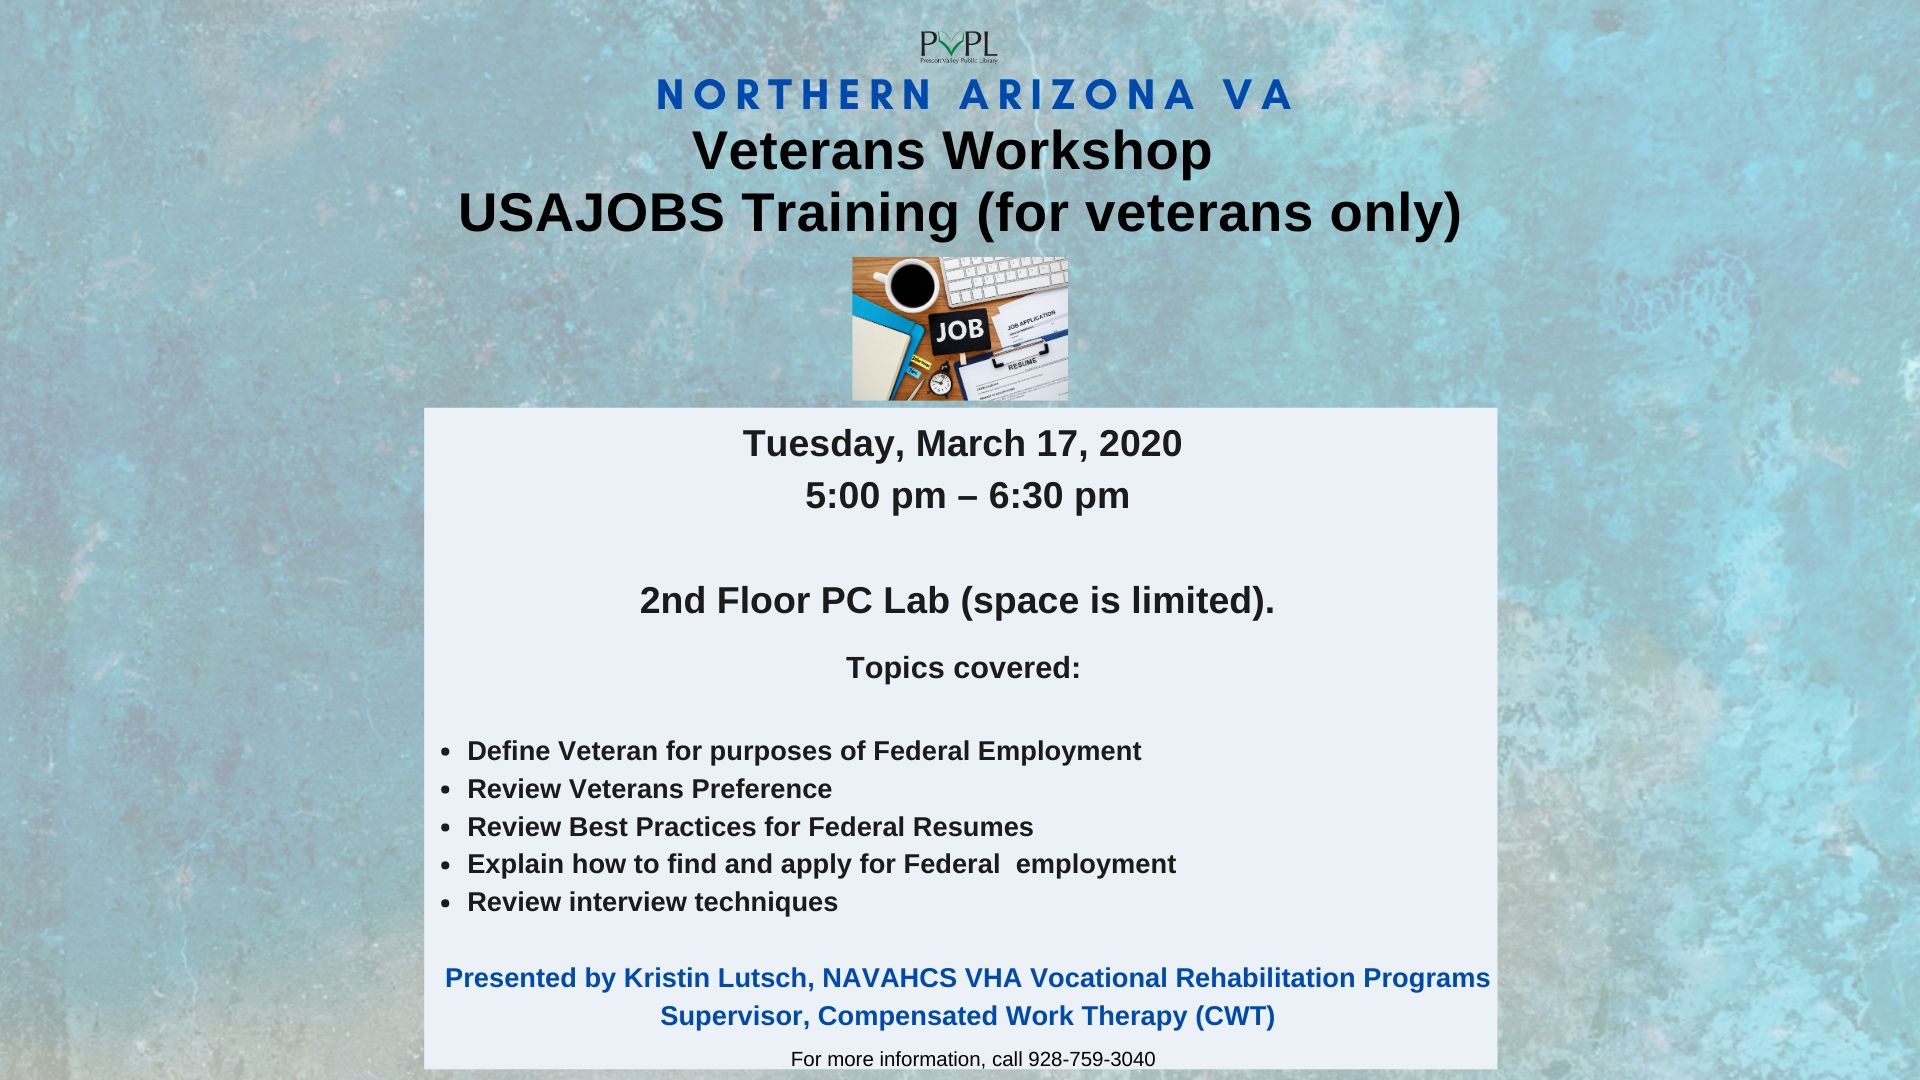 Veterans Workshop – USA Jobs Training (Veterans Only)